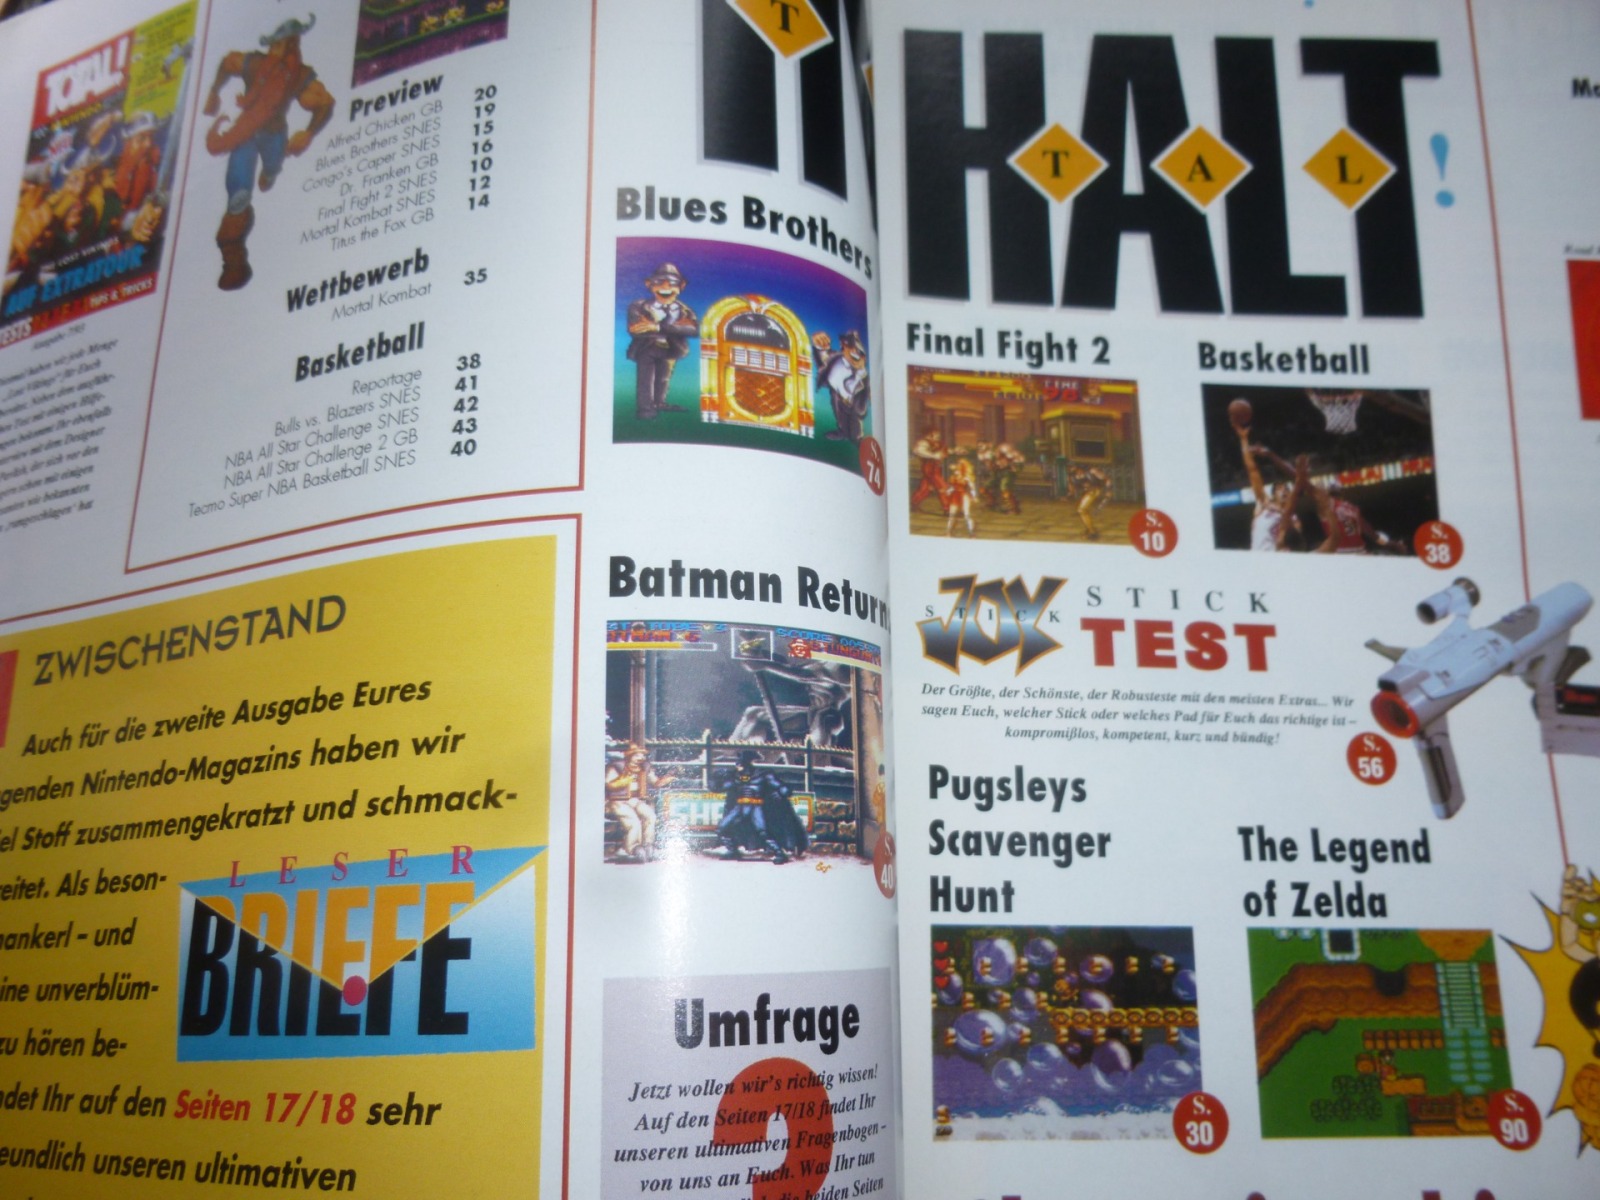 TOTAL Das unabhängige Magazin - 100 Nintendo - Ausgabe 7/93 1993 2